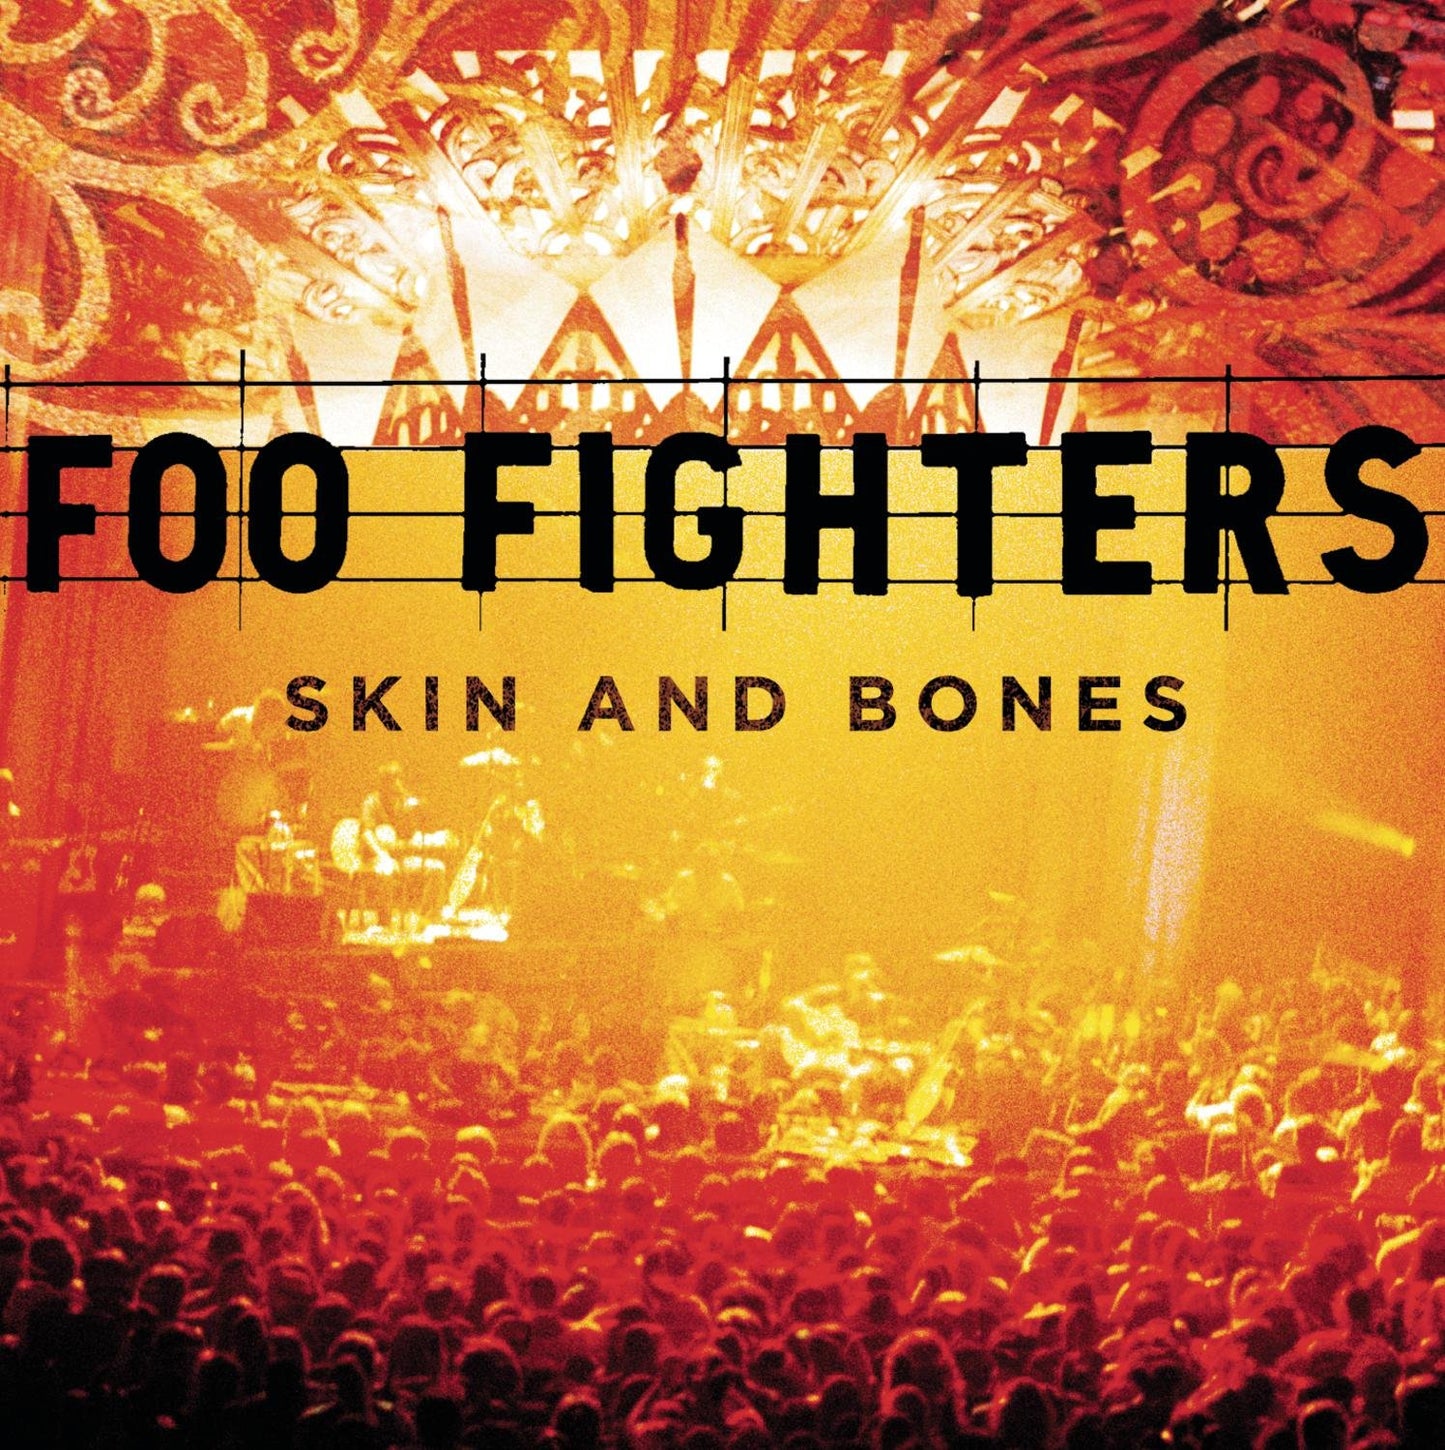 Foo fighters - Skin and bones